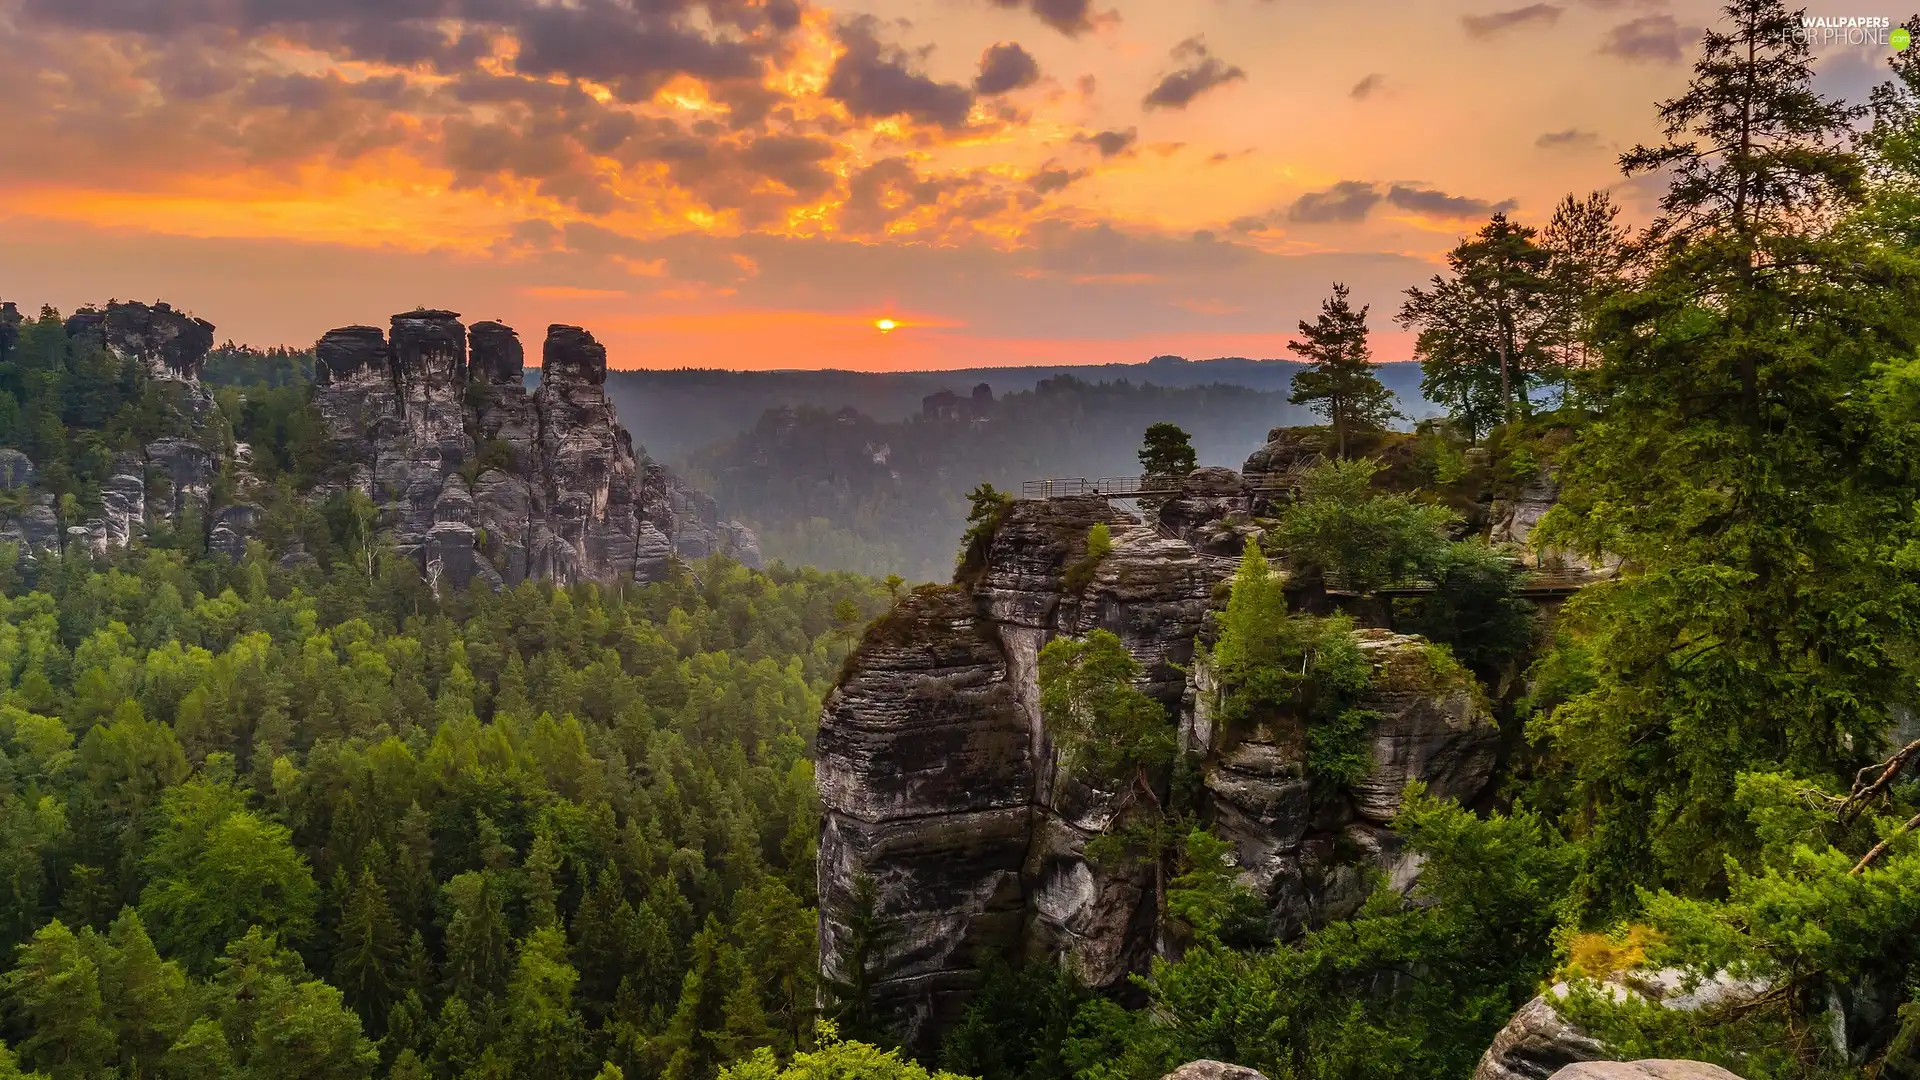 viewes, Děčínská vrchovina, Saxon Switzerland National Park, trees, rocks, Great Sunsets, Germany